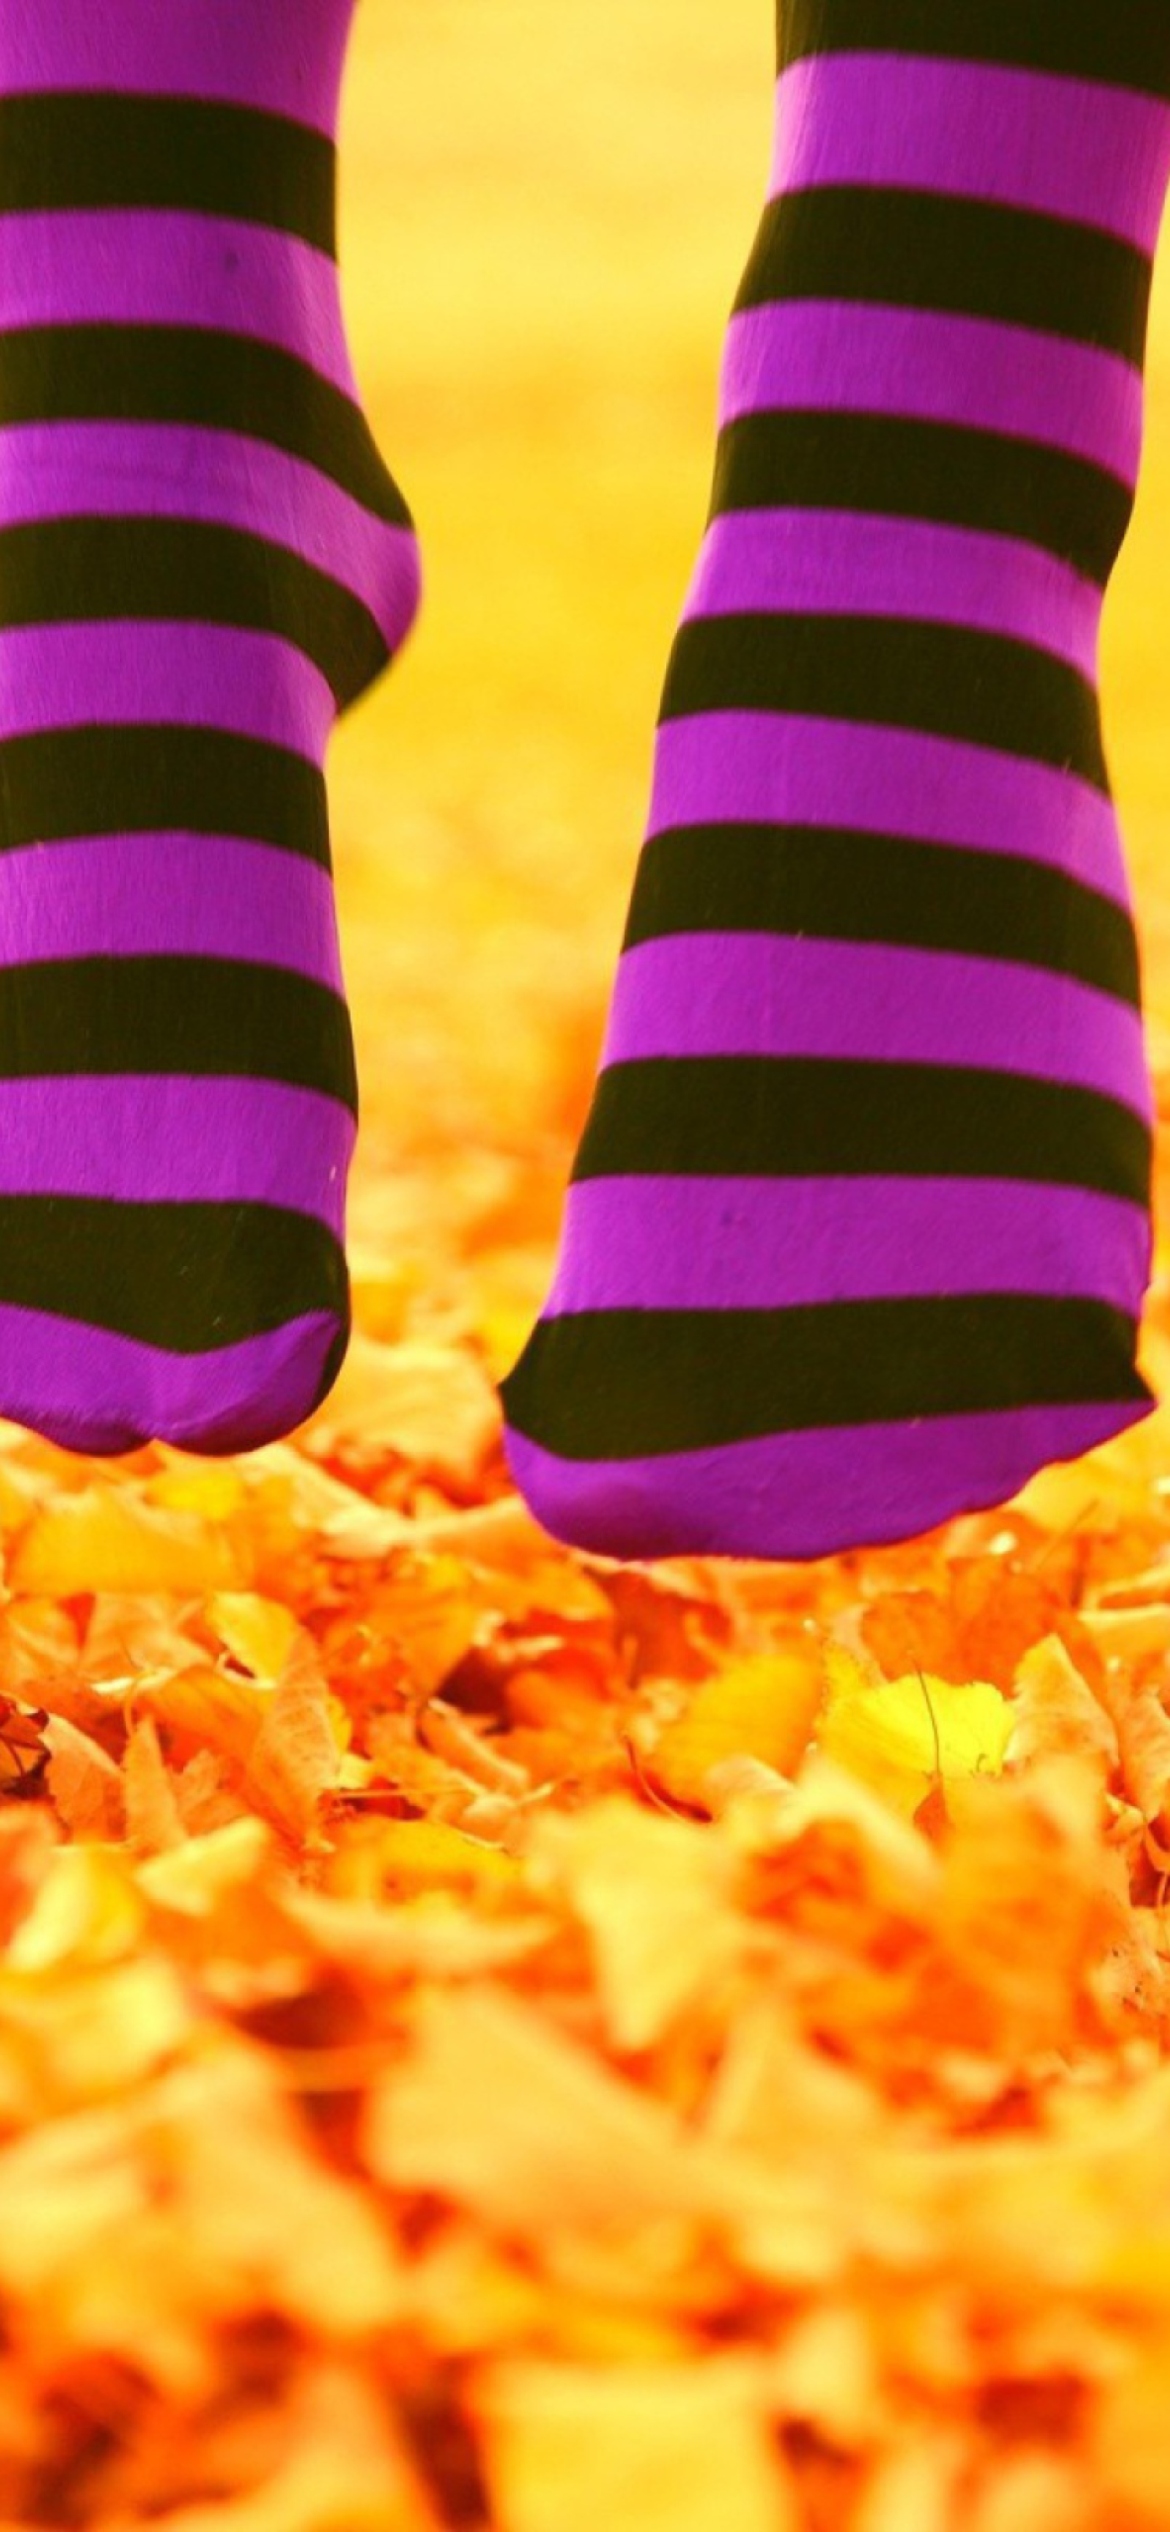 Sfondi Purple Feet And Yellow Leaves 1170x2532